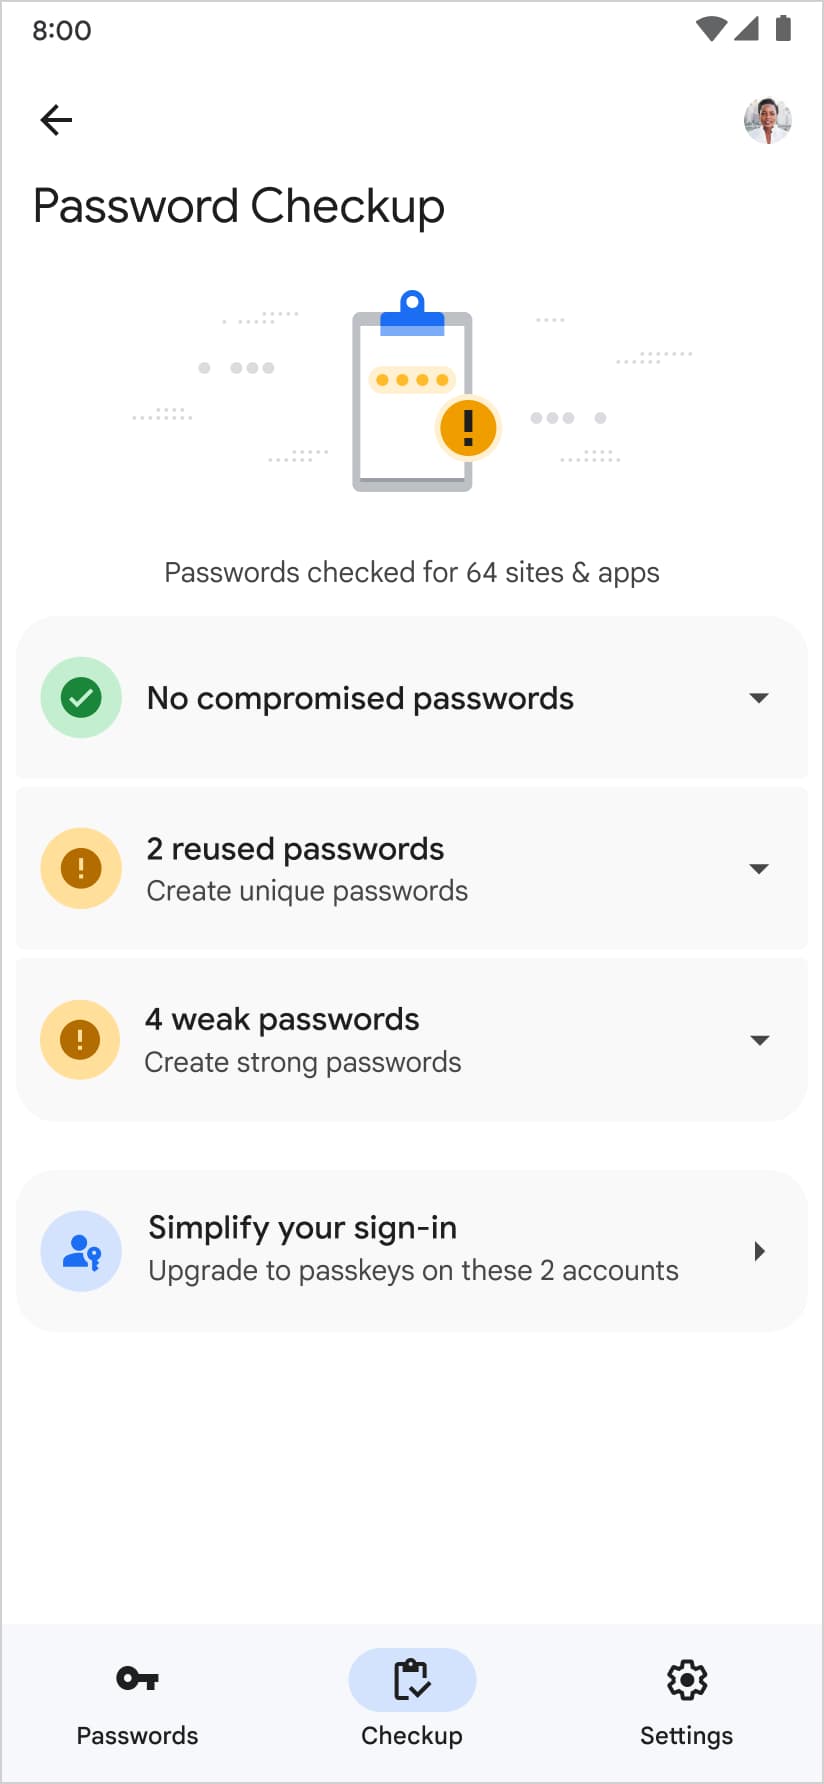 Google 密码管理工具还建议您在密码安全检查页面创建一个通行密钥。